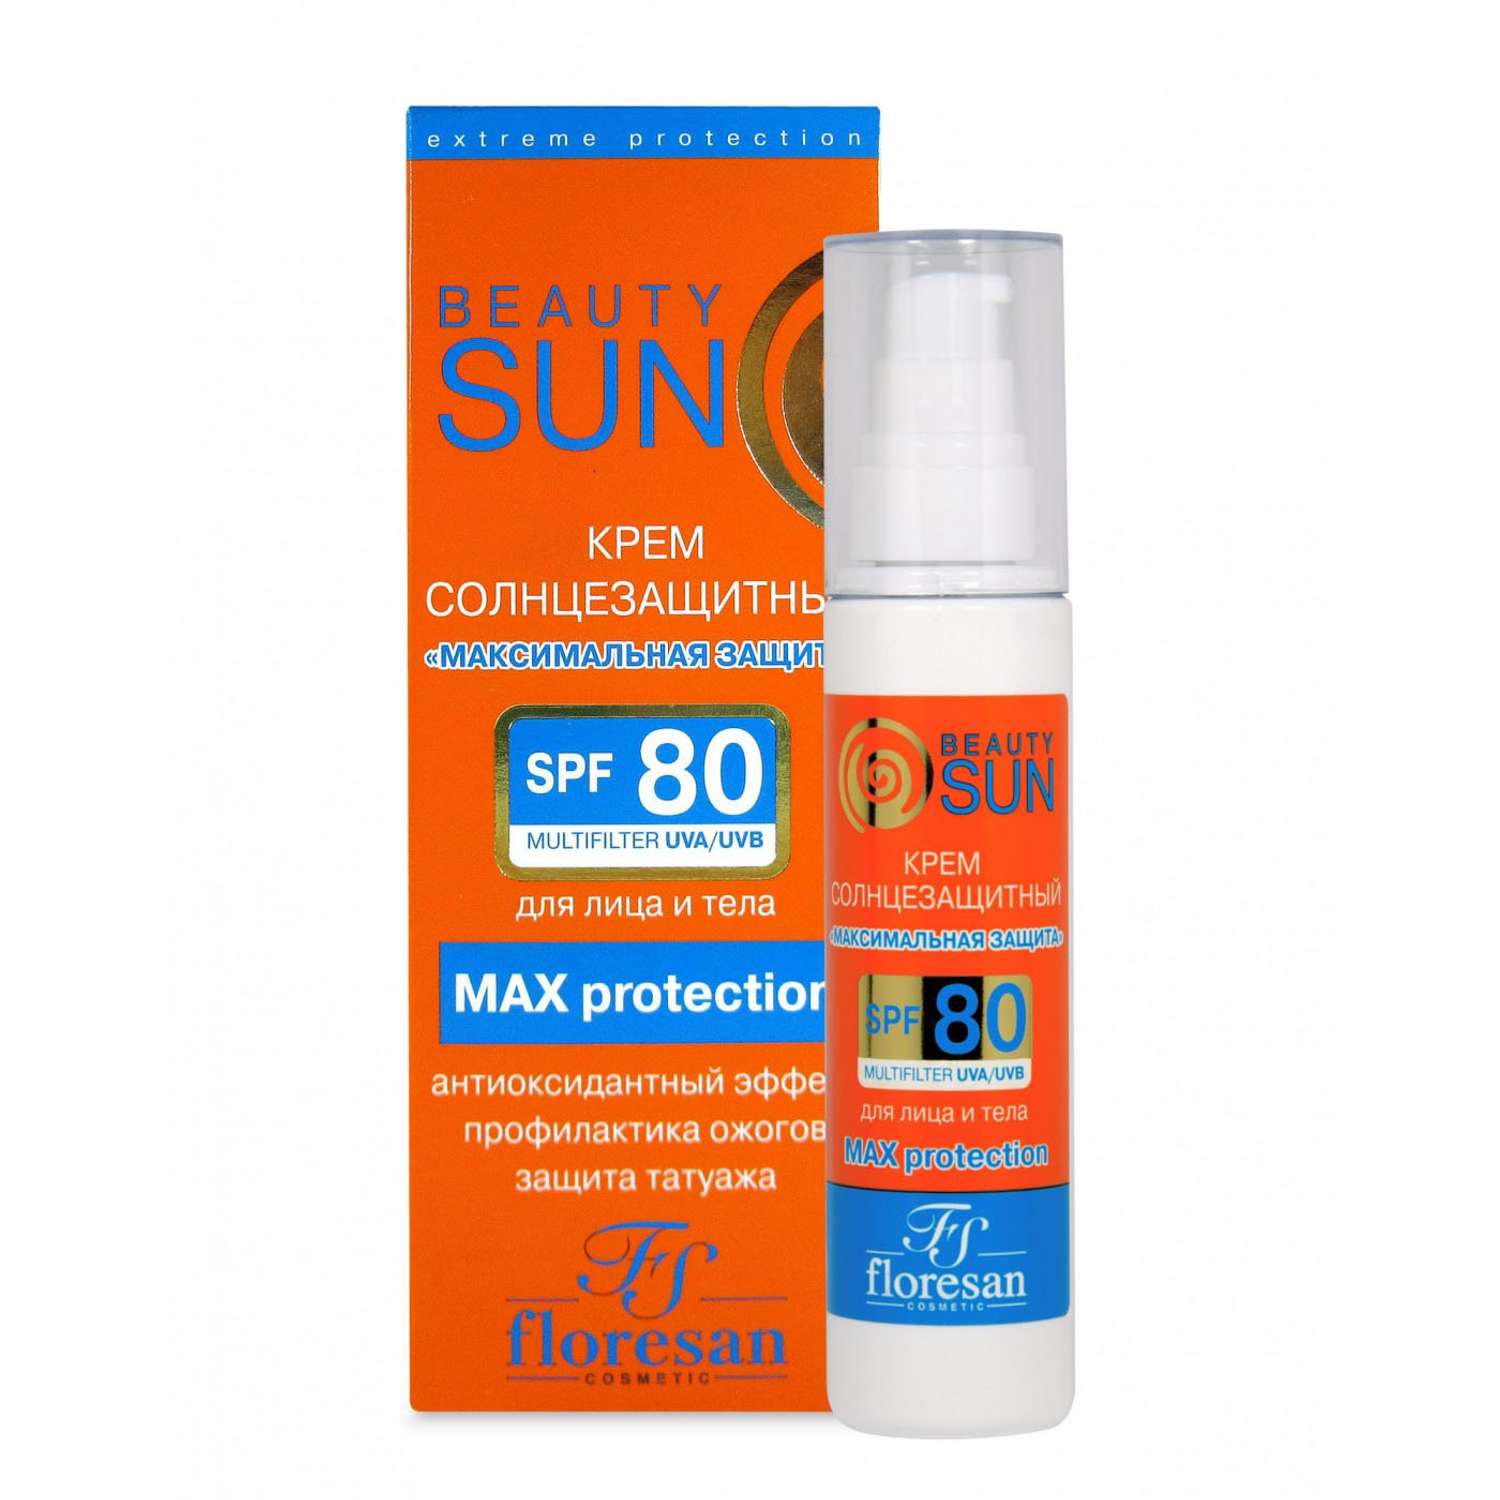 Солнцезащитный крем floresan BeautySun Максимальная защита SPF 80 75мл - фото 1